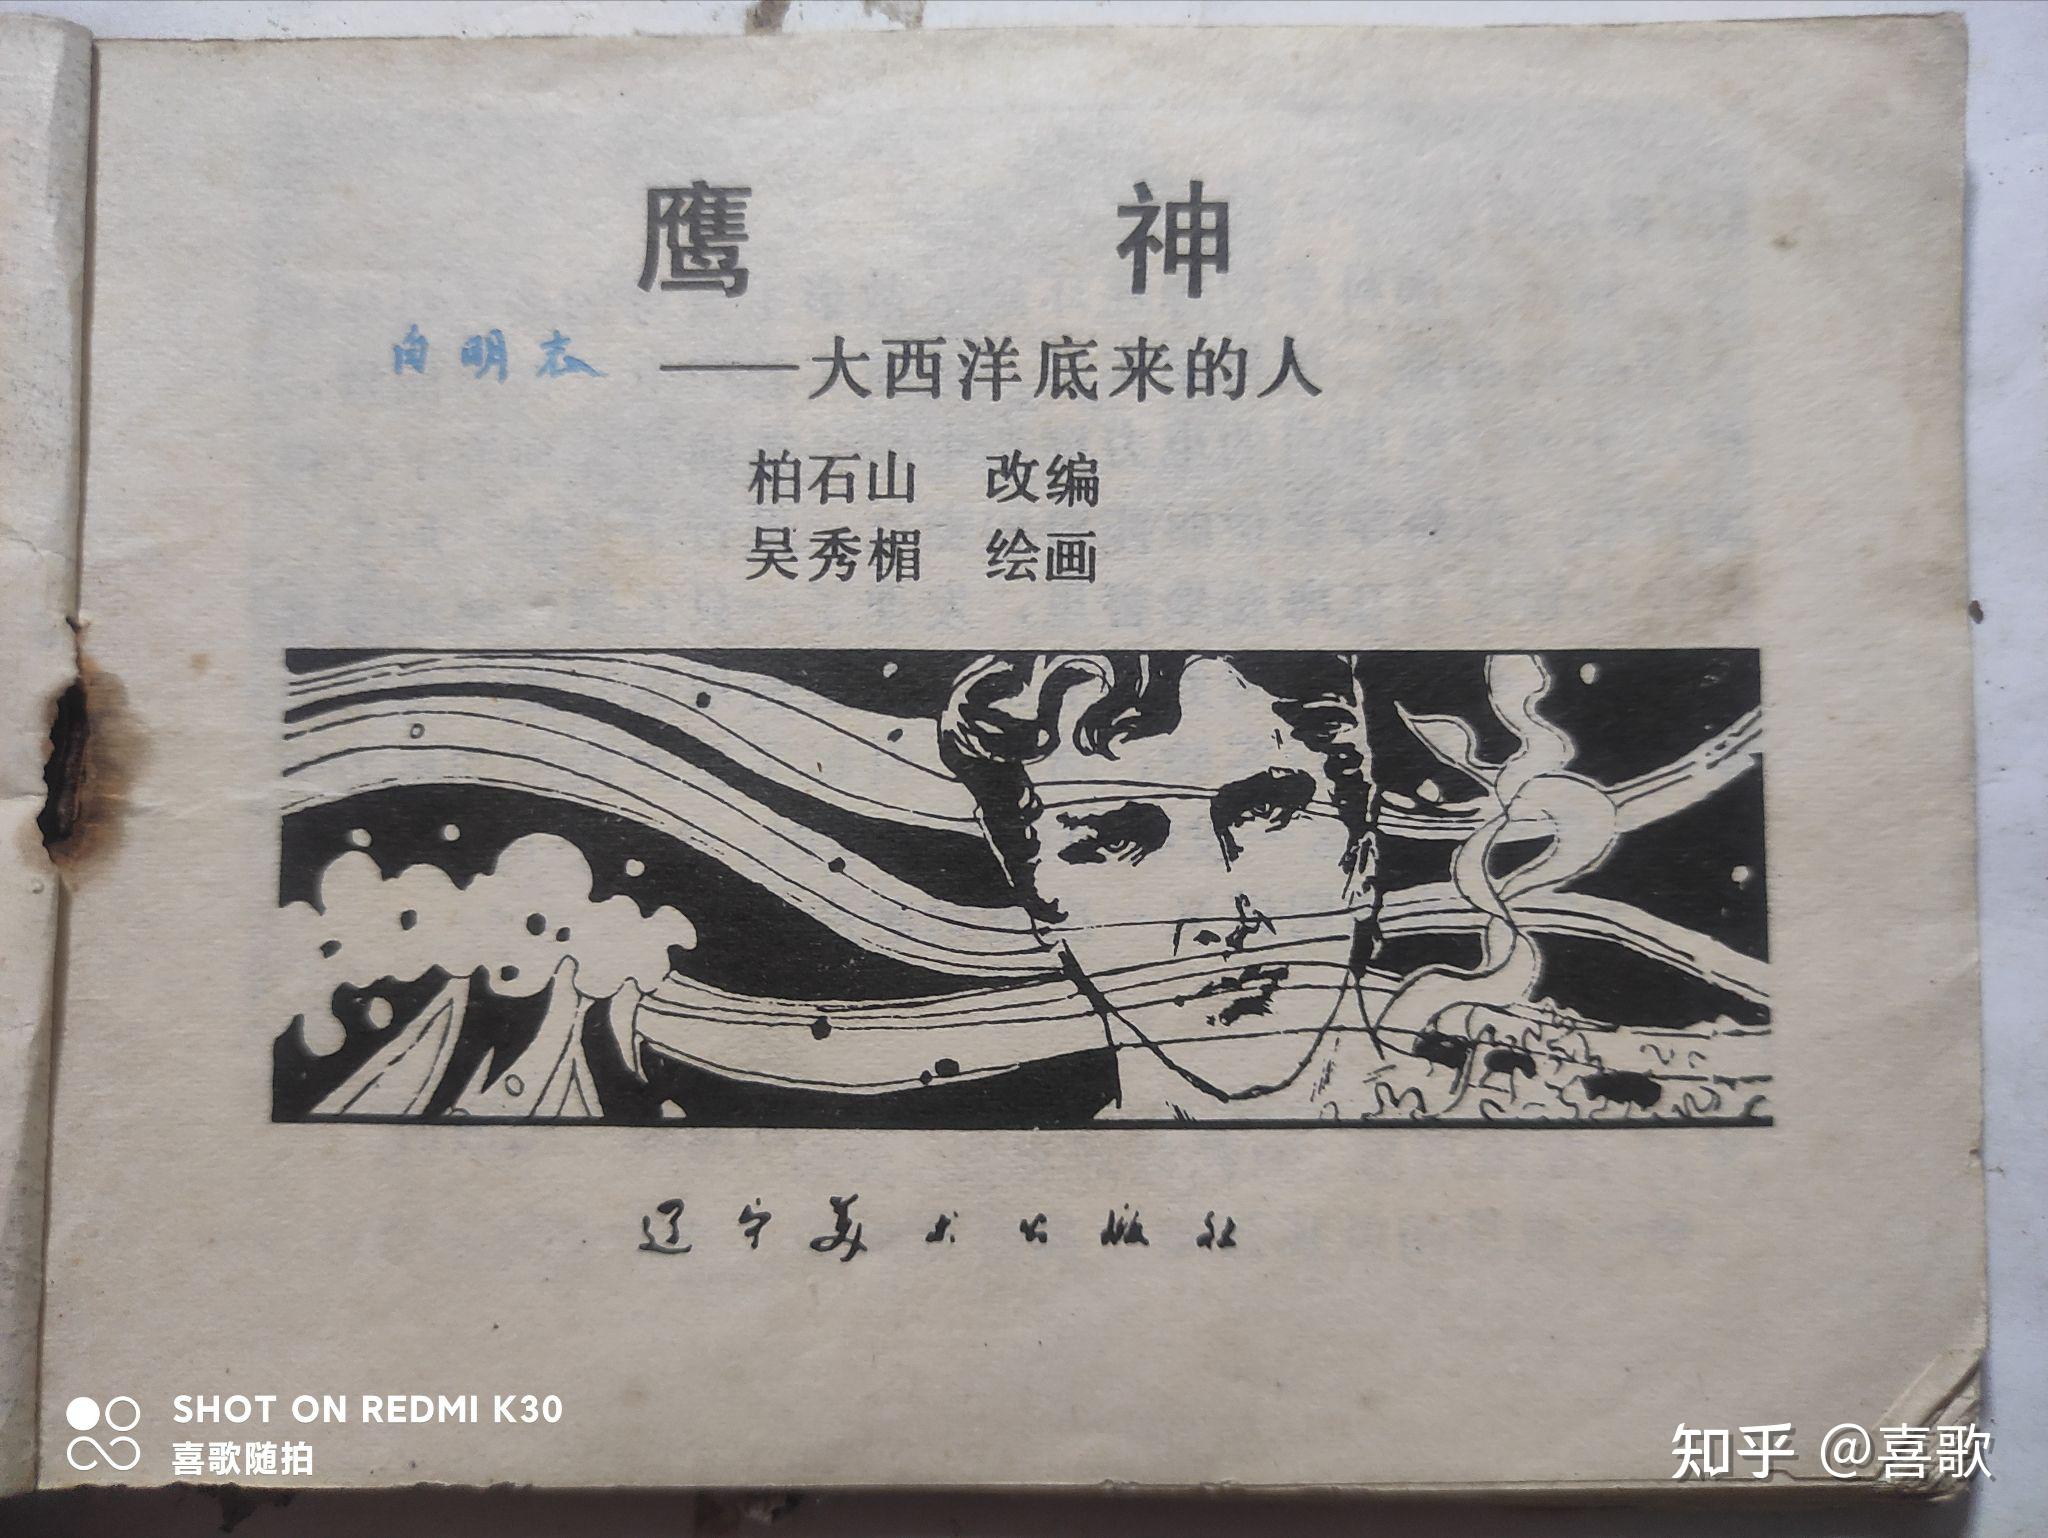 1977 大西洋底来的人 720p高清 国语版 普通话 17集 美剧 下载地址 – 文推网